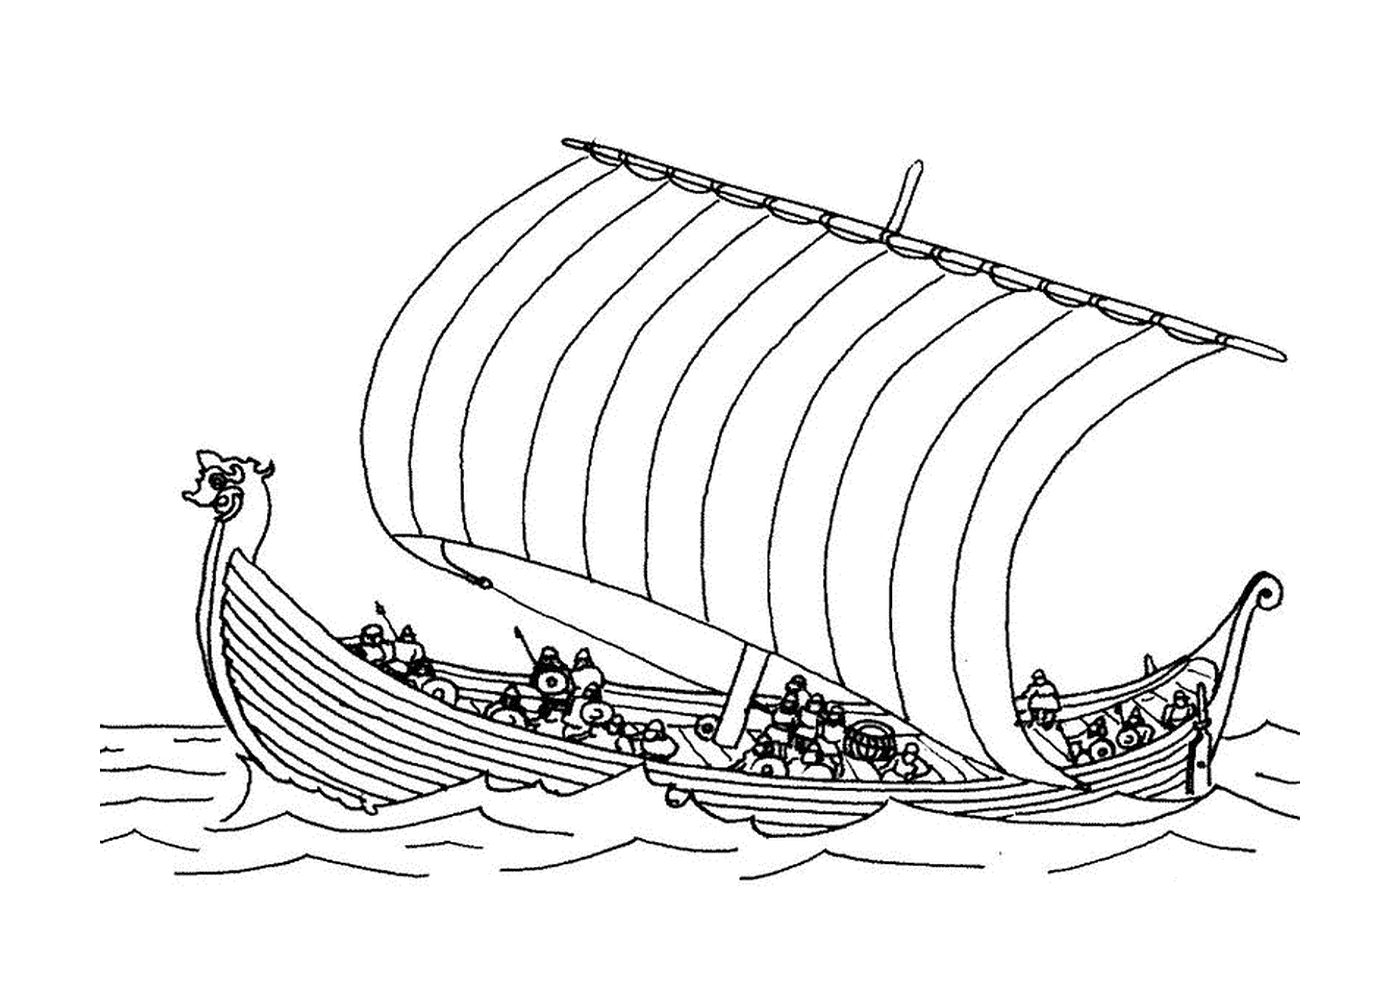  Ein Drakkar-Boot auf dem Wasser 